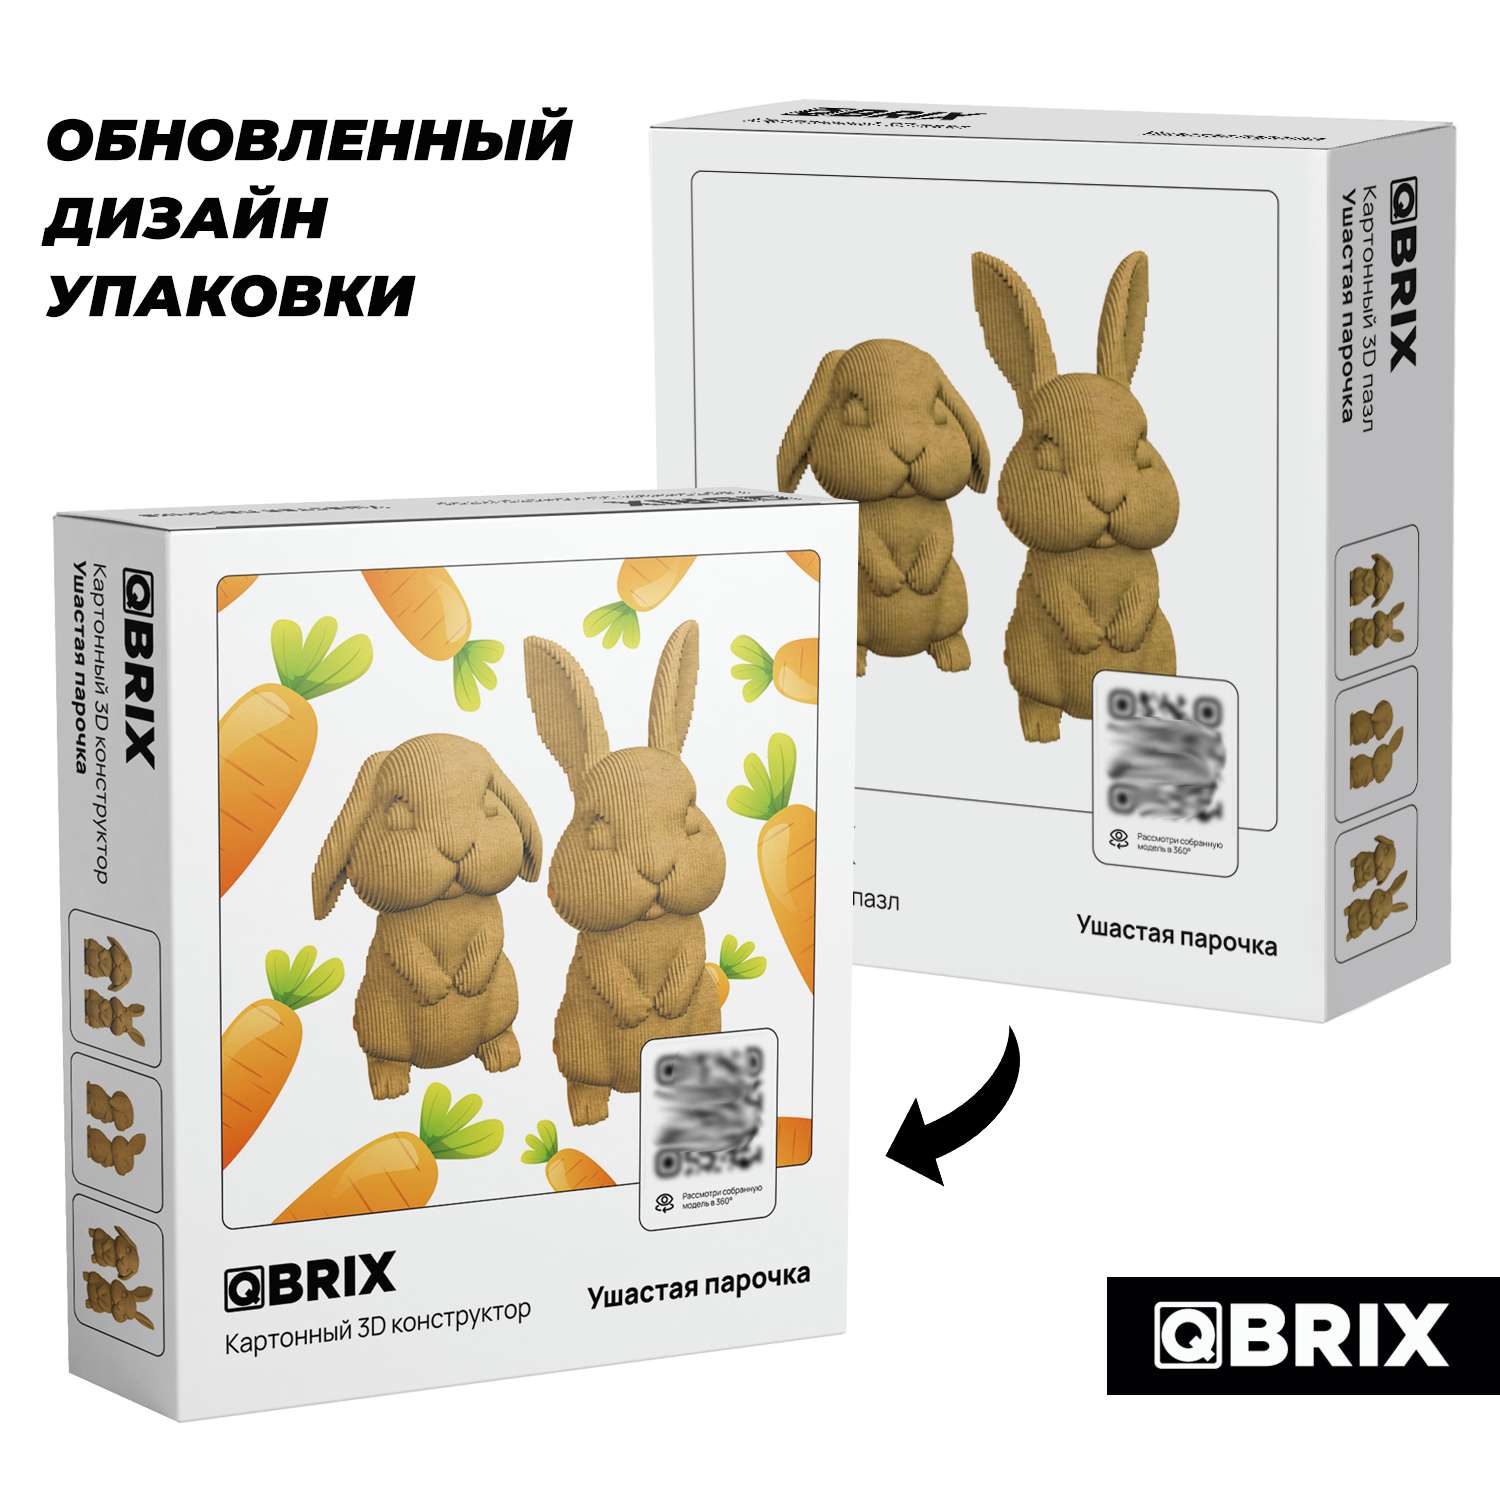 Конструктор QBRIX 3D картонный Ушастая парочка 20032 20032 - фото 2